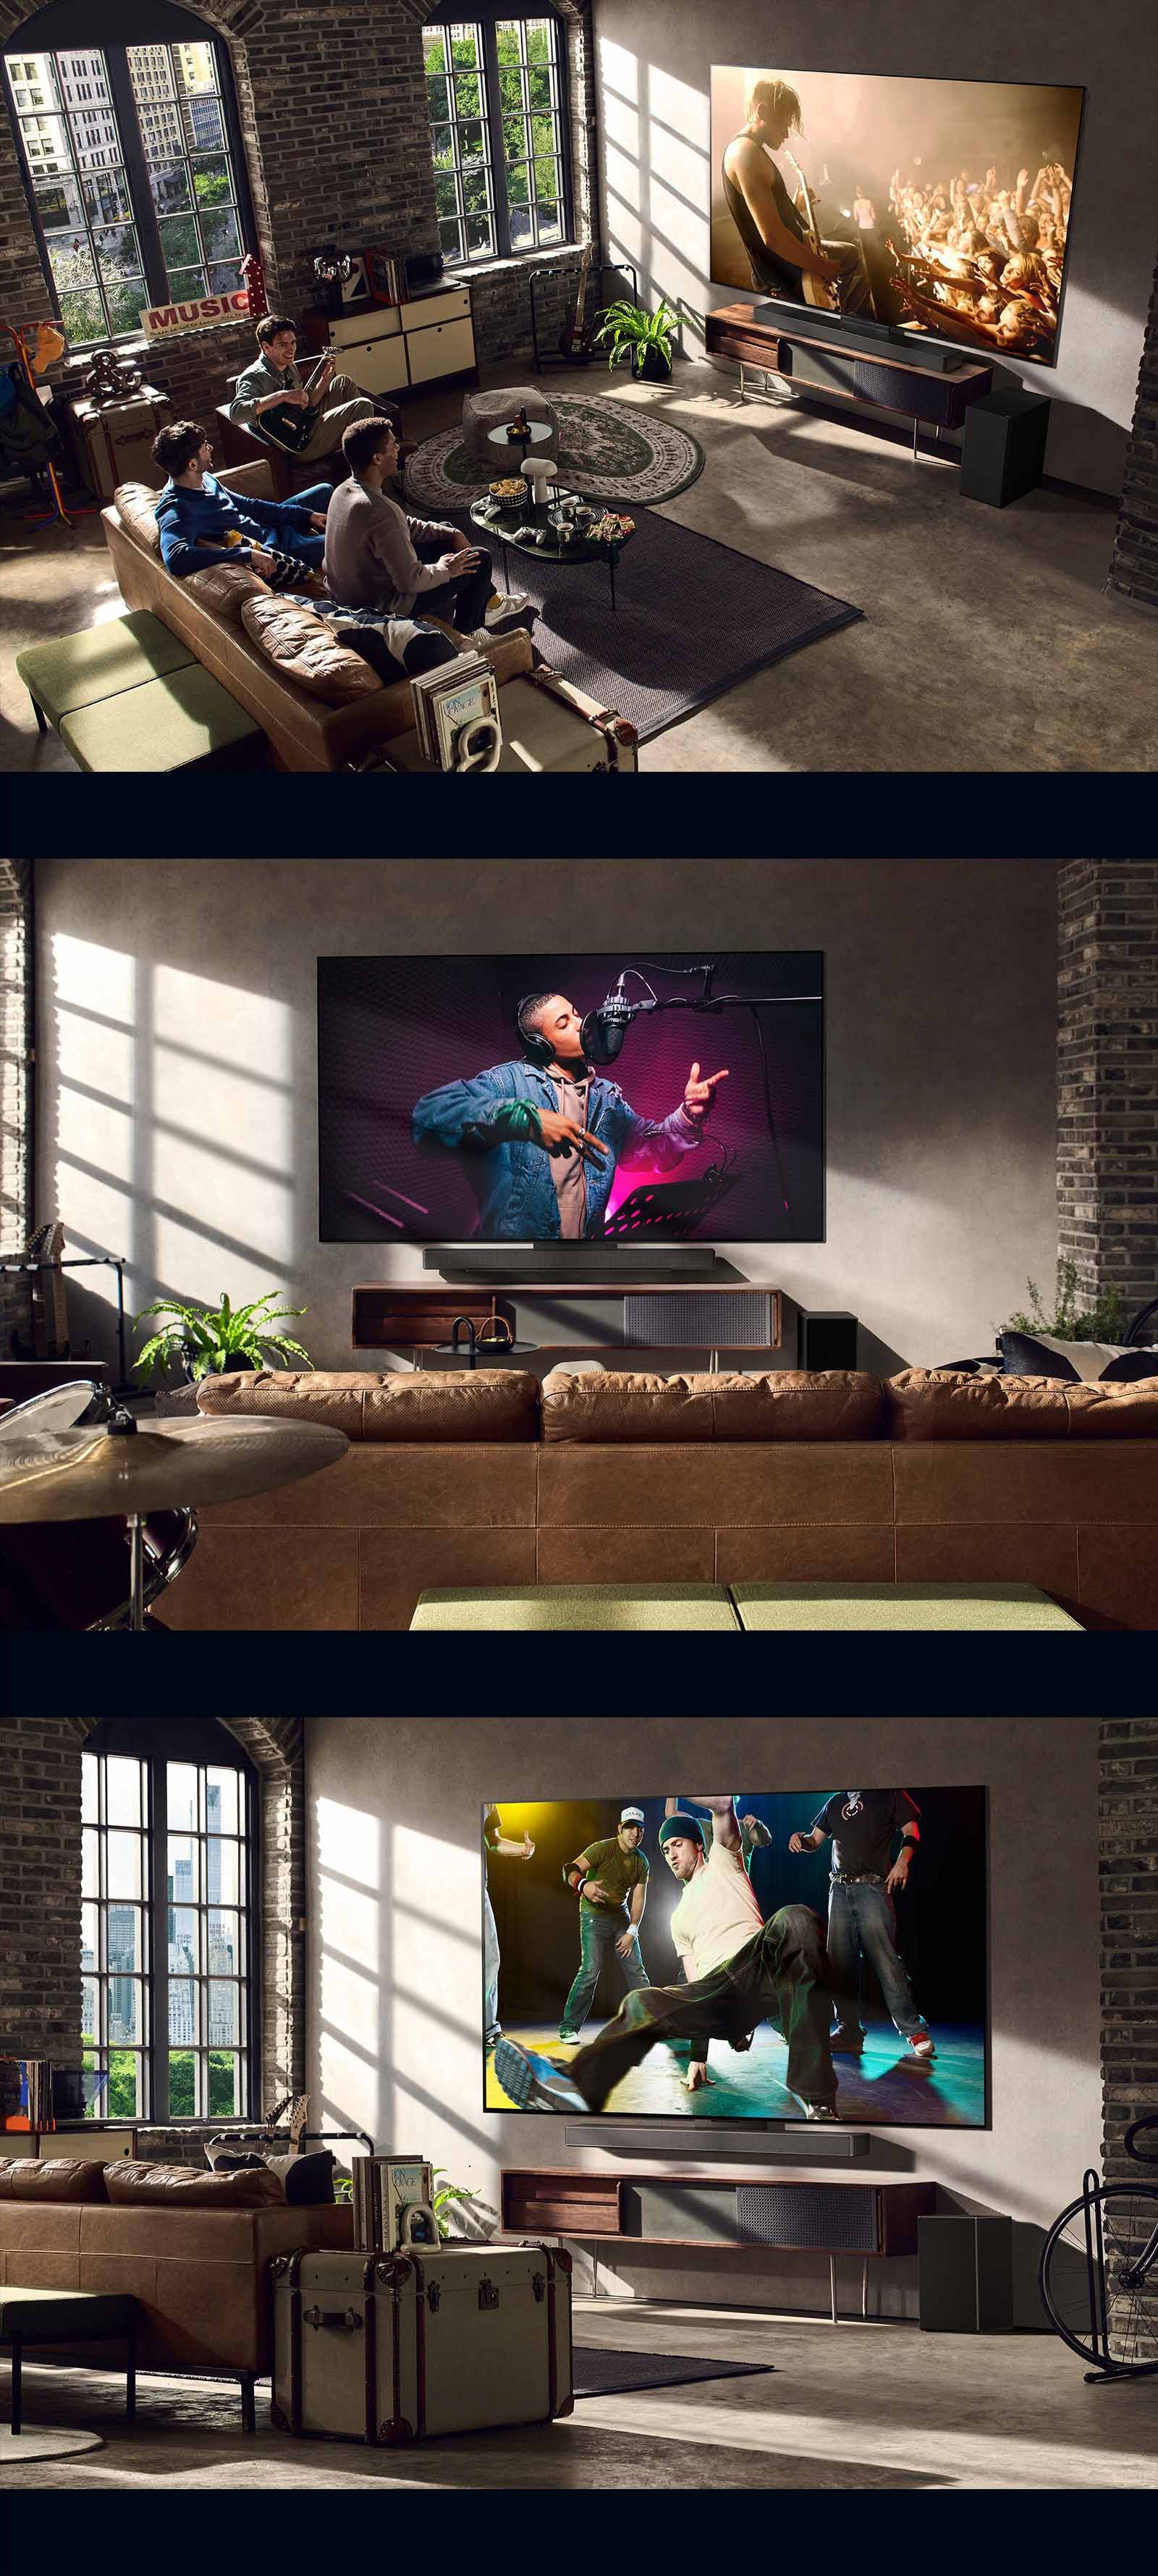 Er zijn drie lifestylebeelden. Van boven naar beneden: drie mannen genieten in de woonkamer van een concertvideo. Er is een LG TV aan de muur die een muziekopnamescène weergeeft, en de LG TV aan de muur die een brekende dansscène toont in een diagonale weergave.